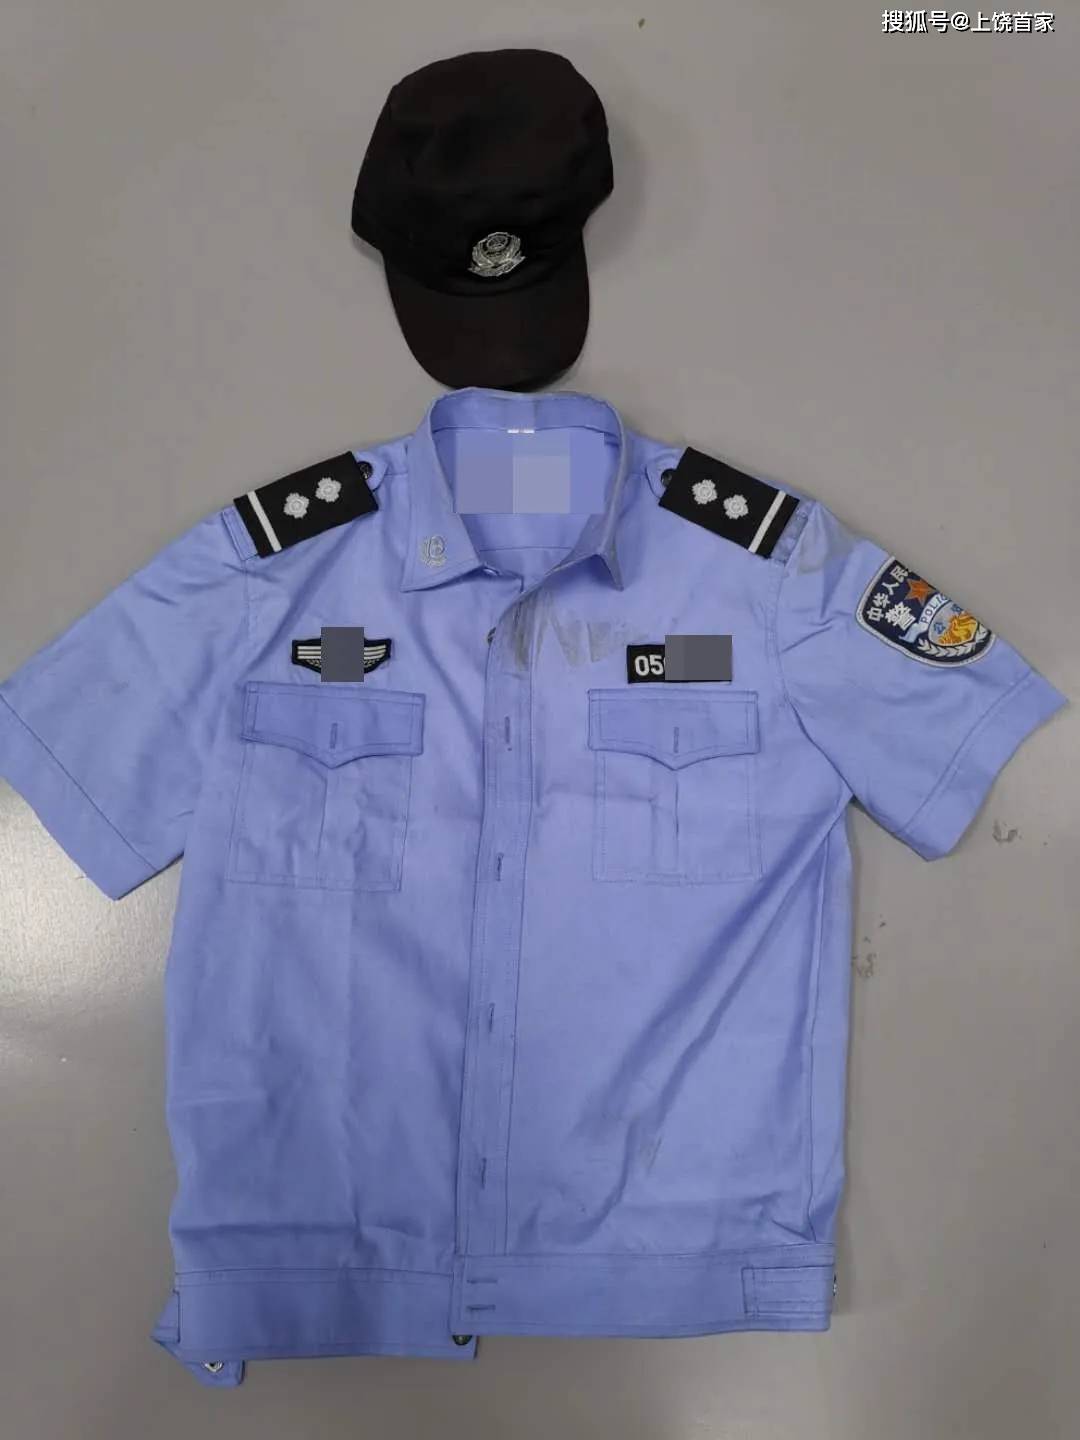 看警用标识 ▼ 民警目前的制式服装共分4类,有执勤服,作训服,春秋常